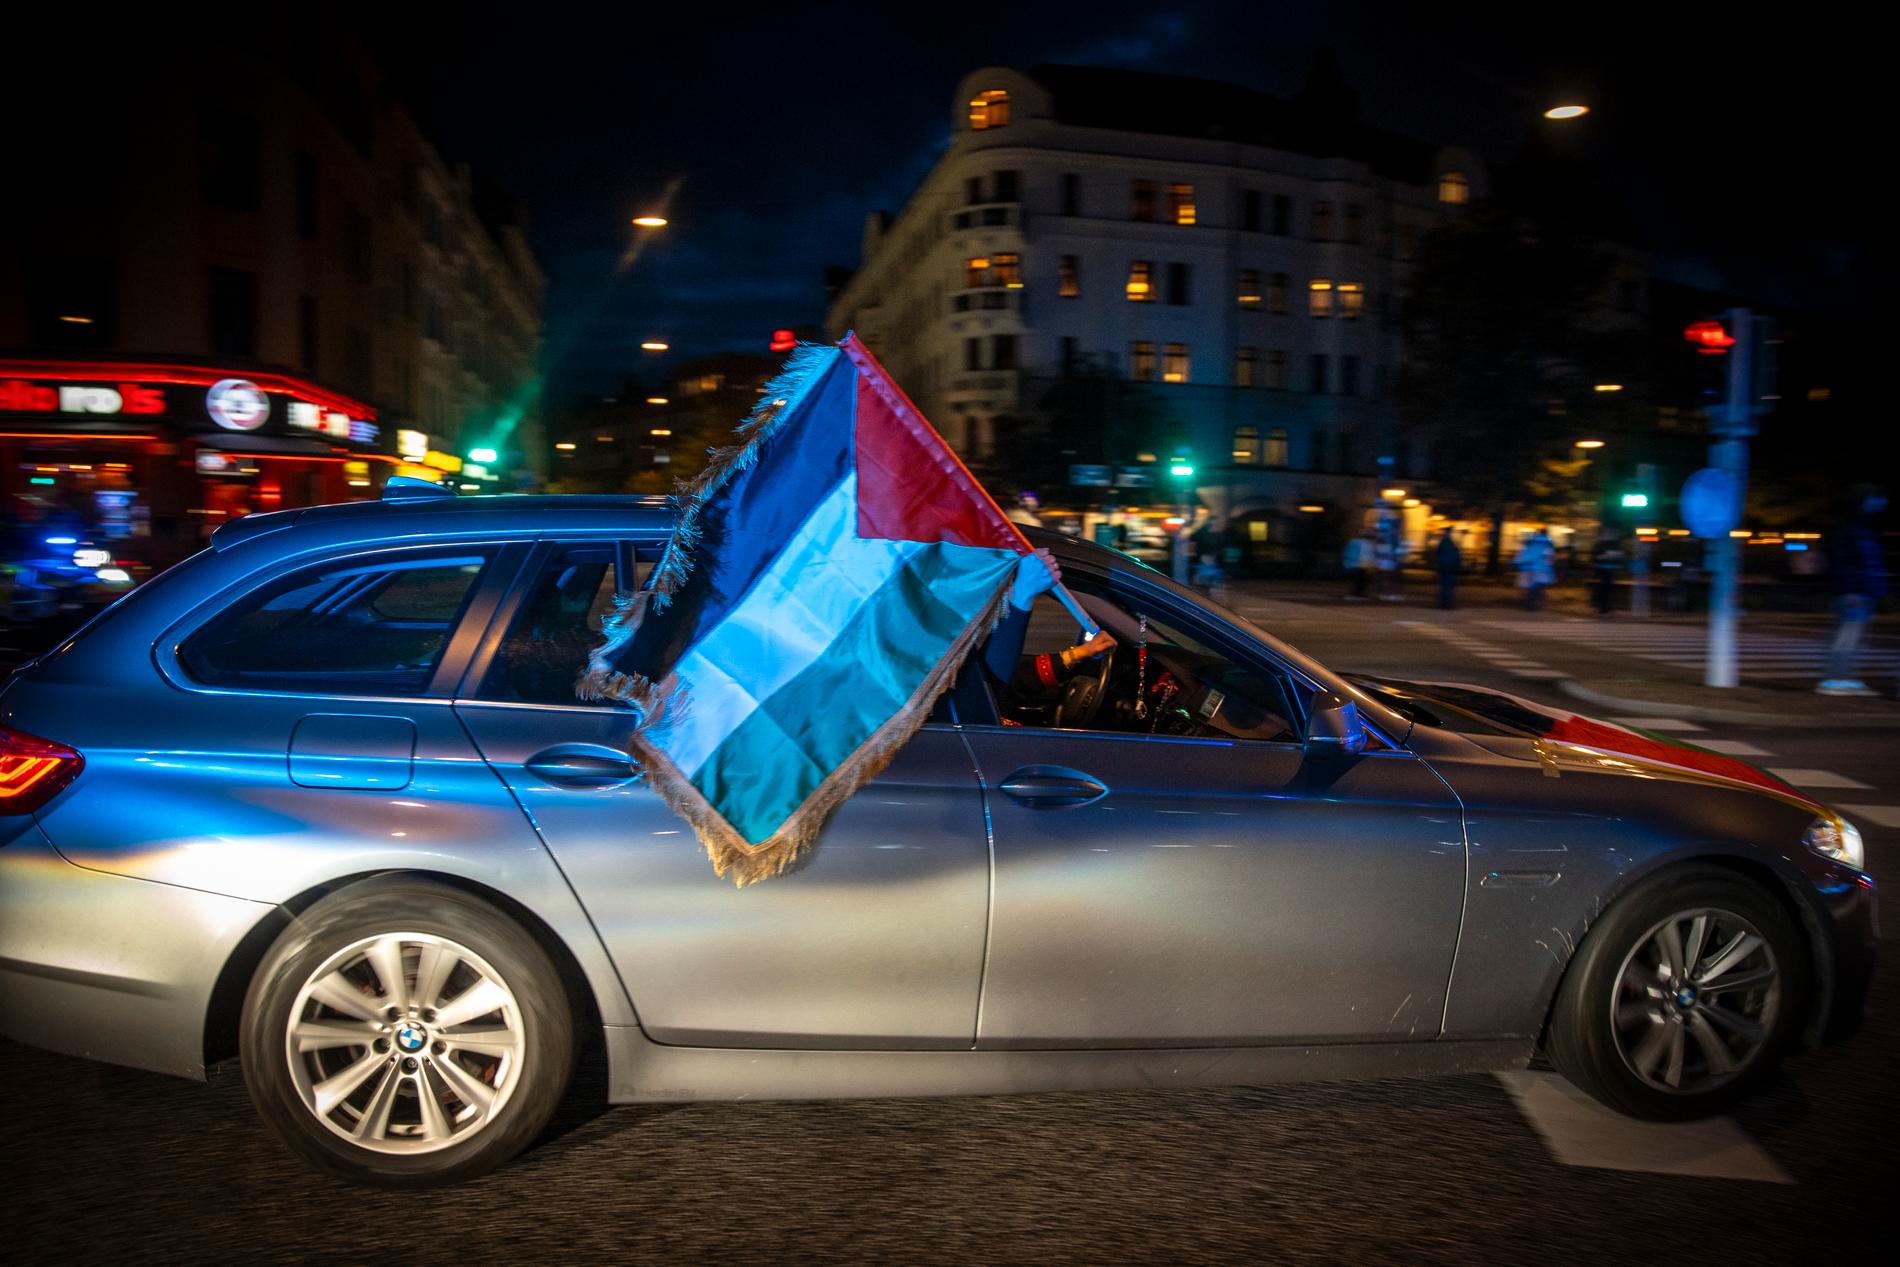 Palestinier boende i Malmö har kört runt med flaggor i Malmö vid flera tillfällen efter att Hamas attackerat Israel. Under måndagskvällen gick en bilkaravan genom stadsdelen Möllevången. 